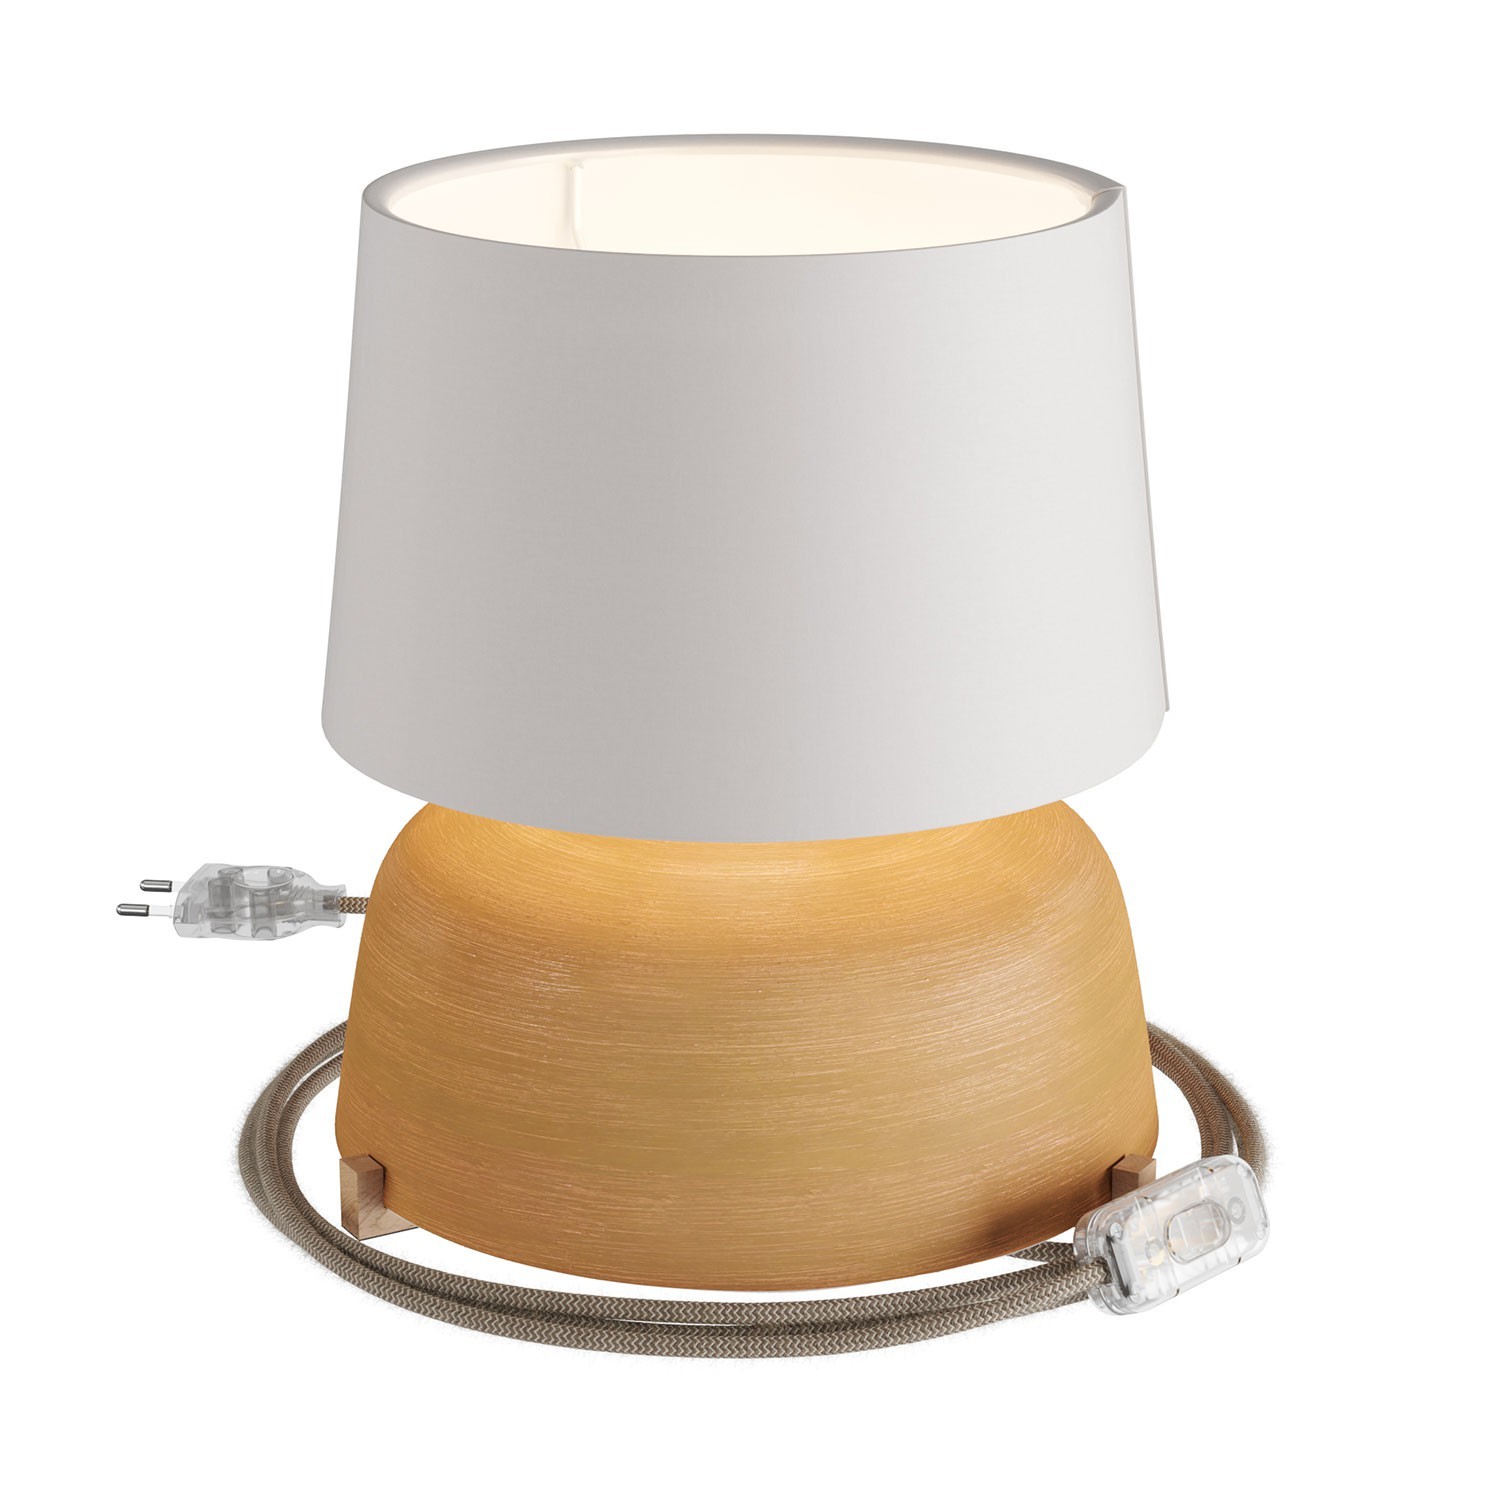 Keramische Grote kop-tafellamp met Athena-kap, met strijkijzersnoer, schakelaar en tweepolige stekker